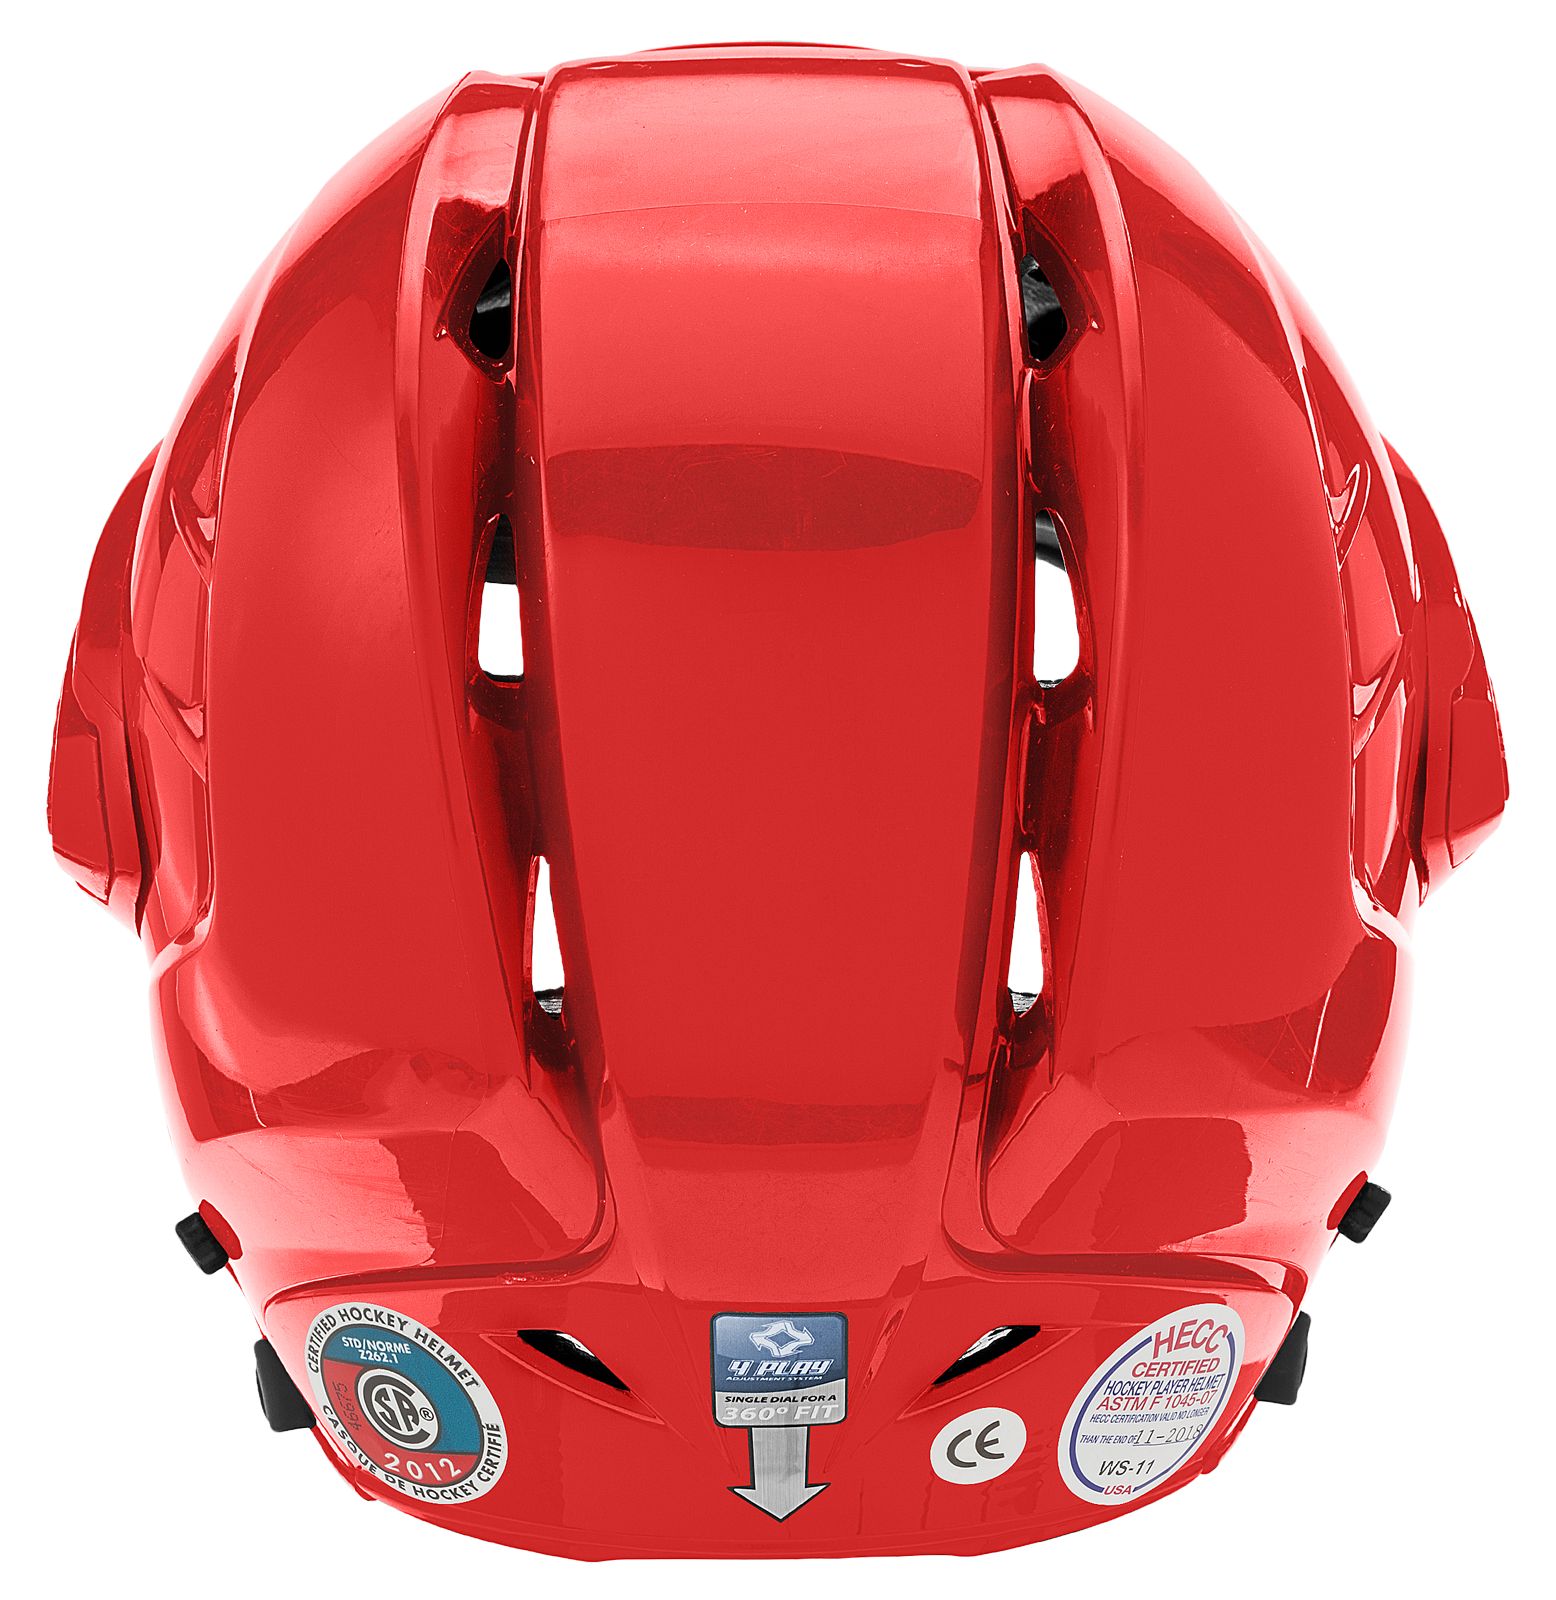 Krown 360 Helmet, Red image number 3